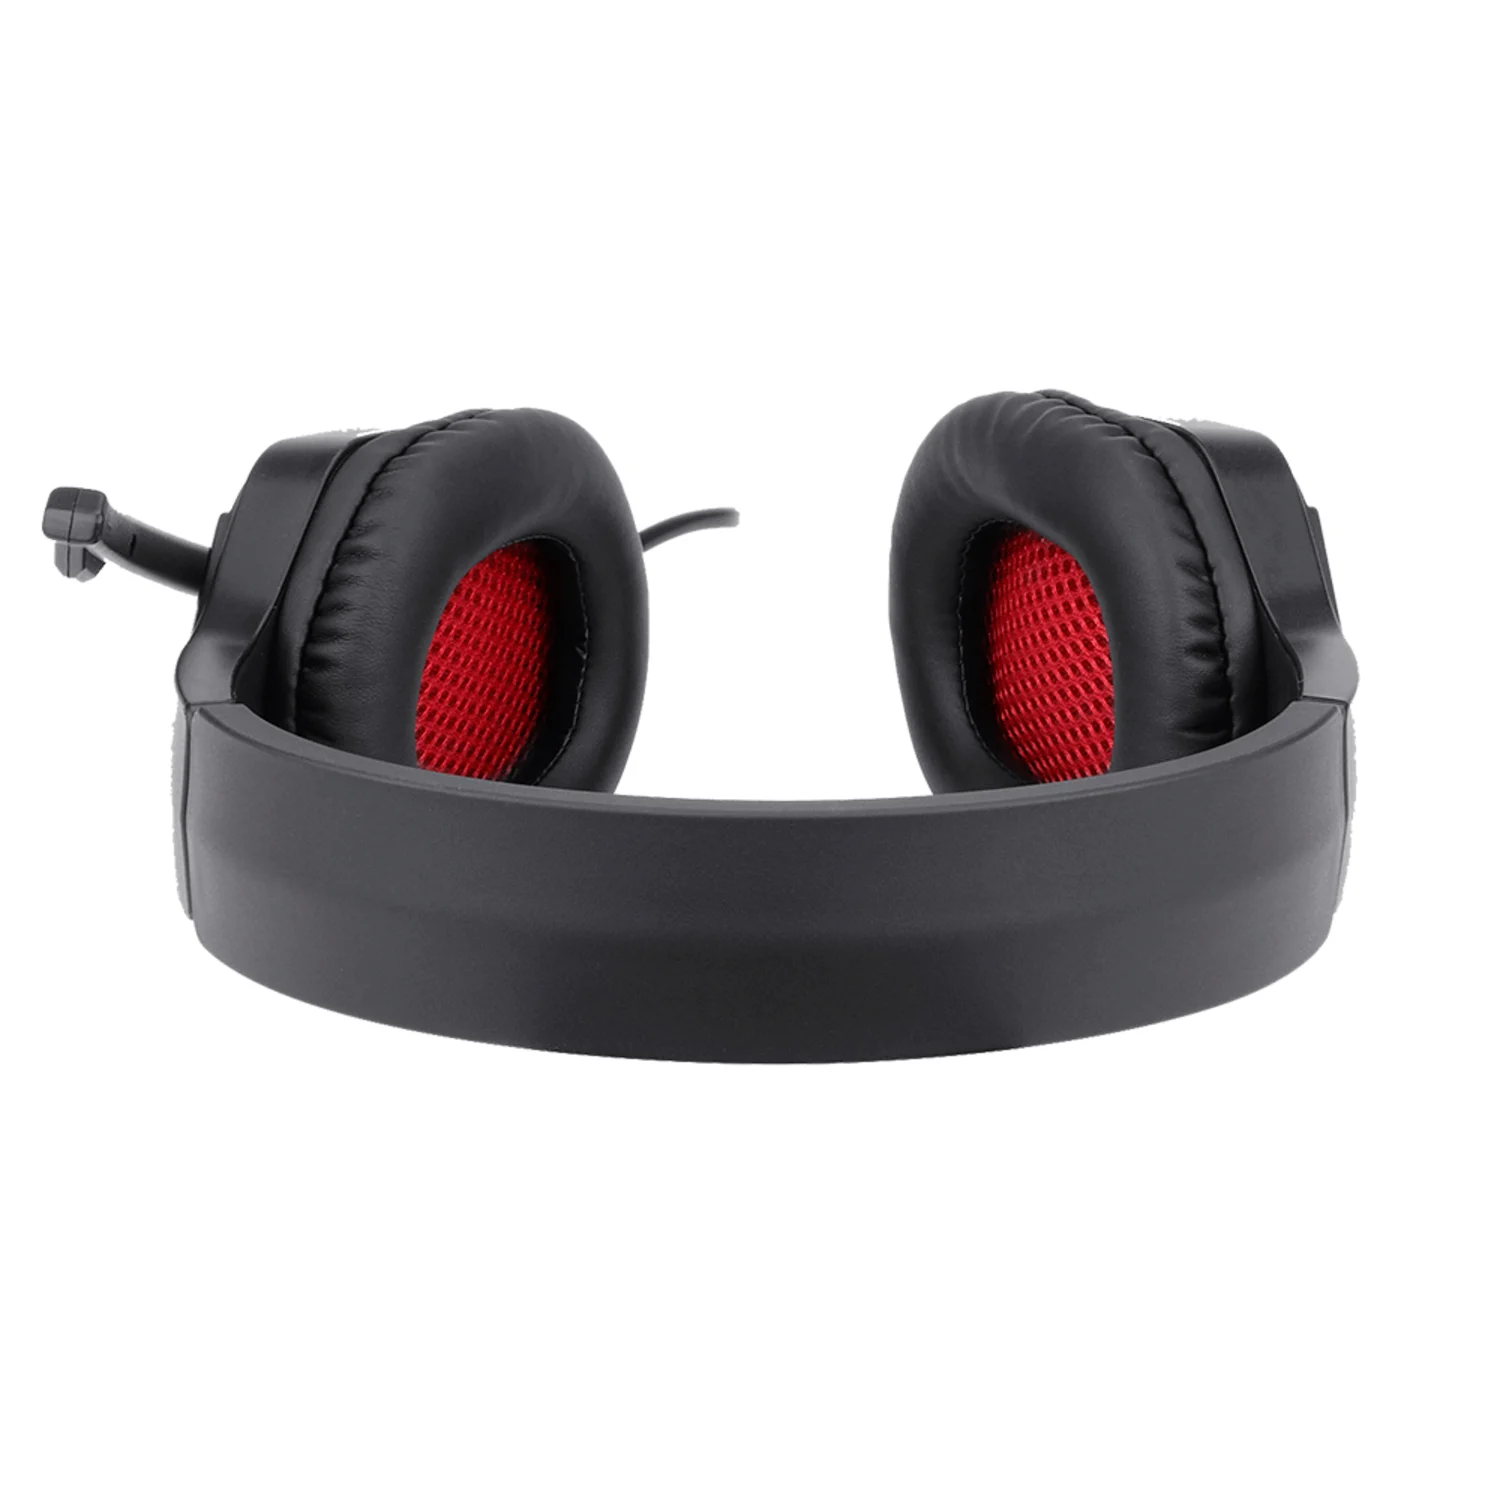 Headset Redragon Themis H220-LED - Preto e vermelho (P2 com Adaptador Jack 3.5)